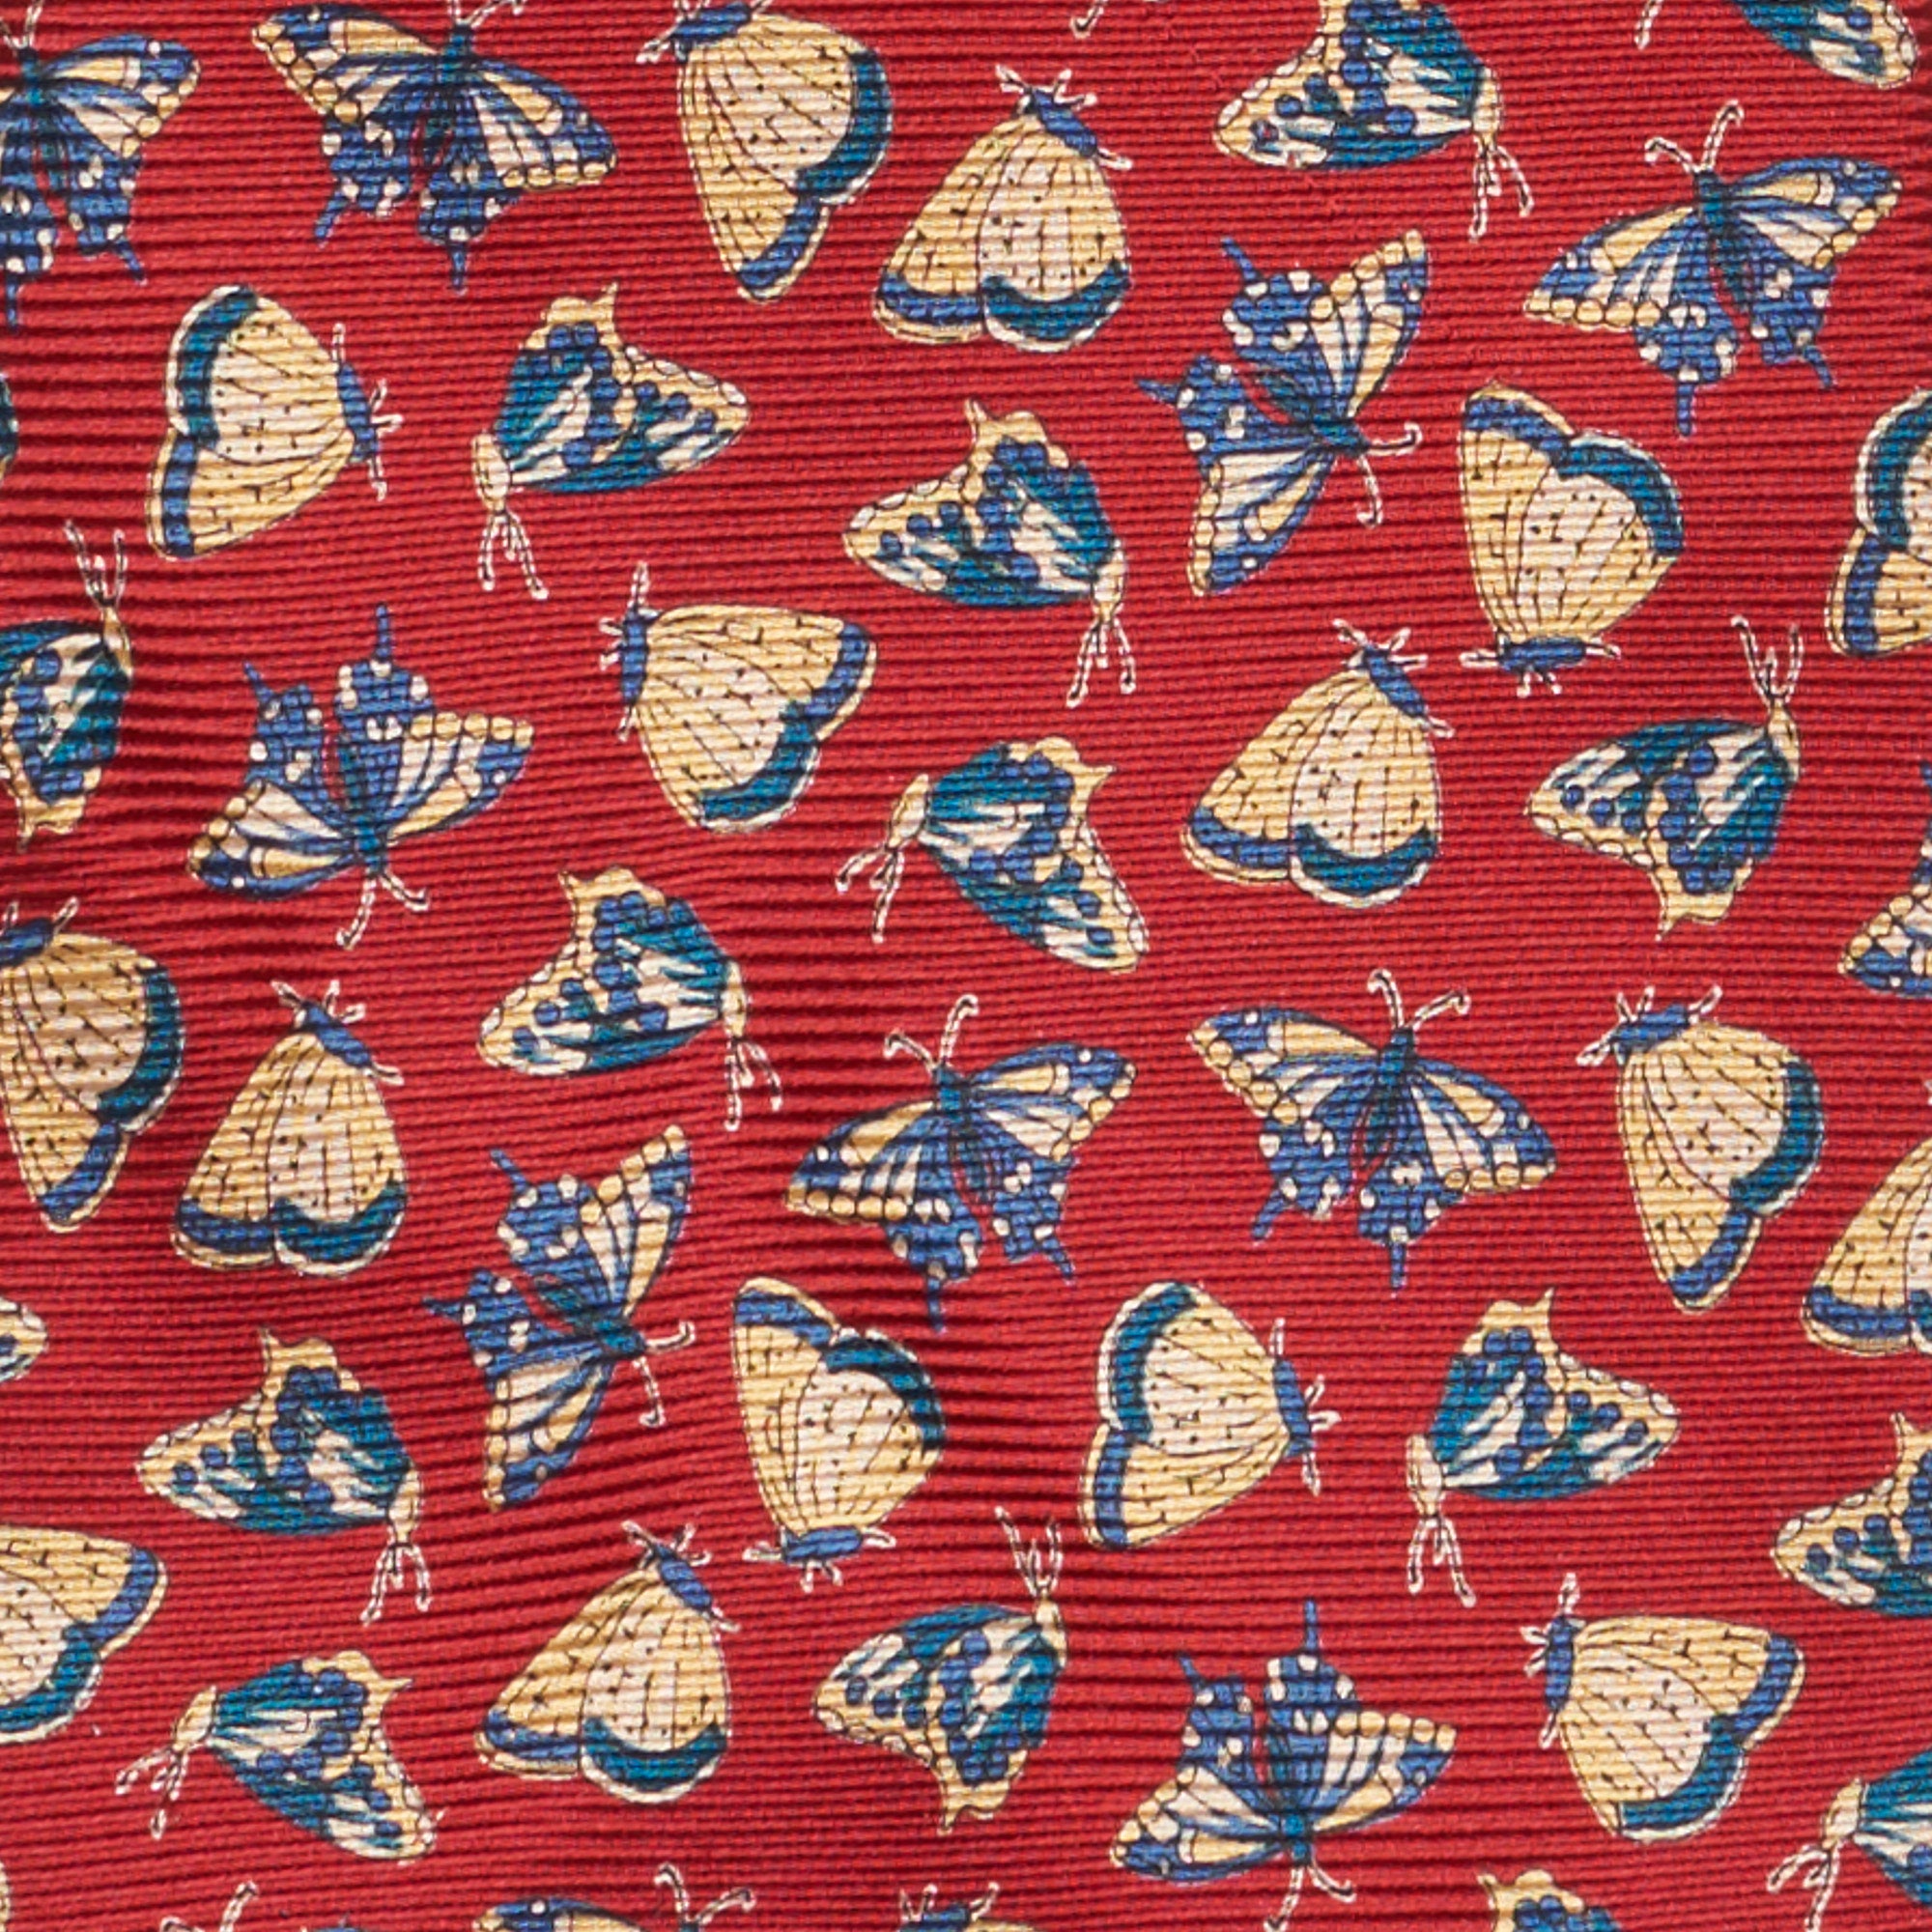 JAY KOS New York Handmade Red Butterfly Design Silk Tie JAY KOS